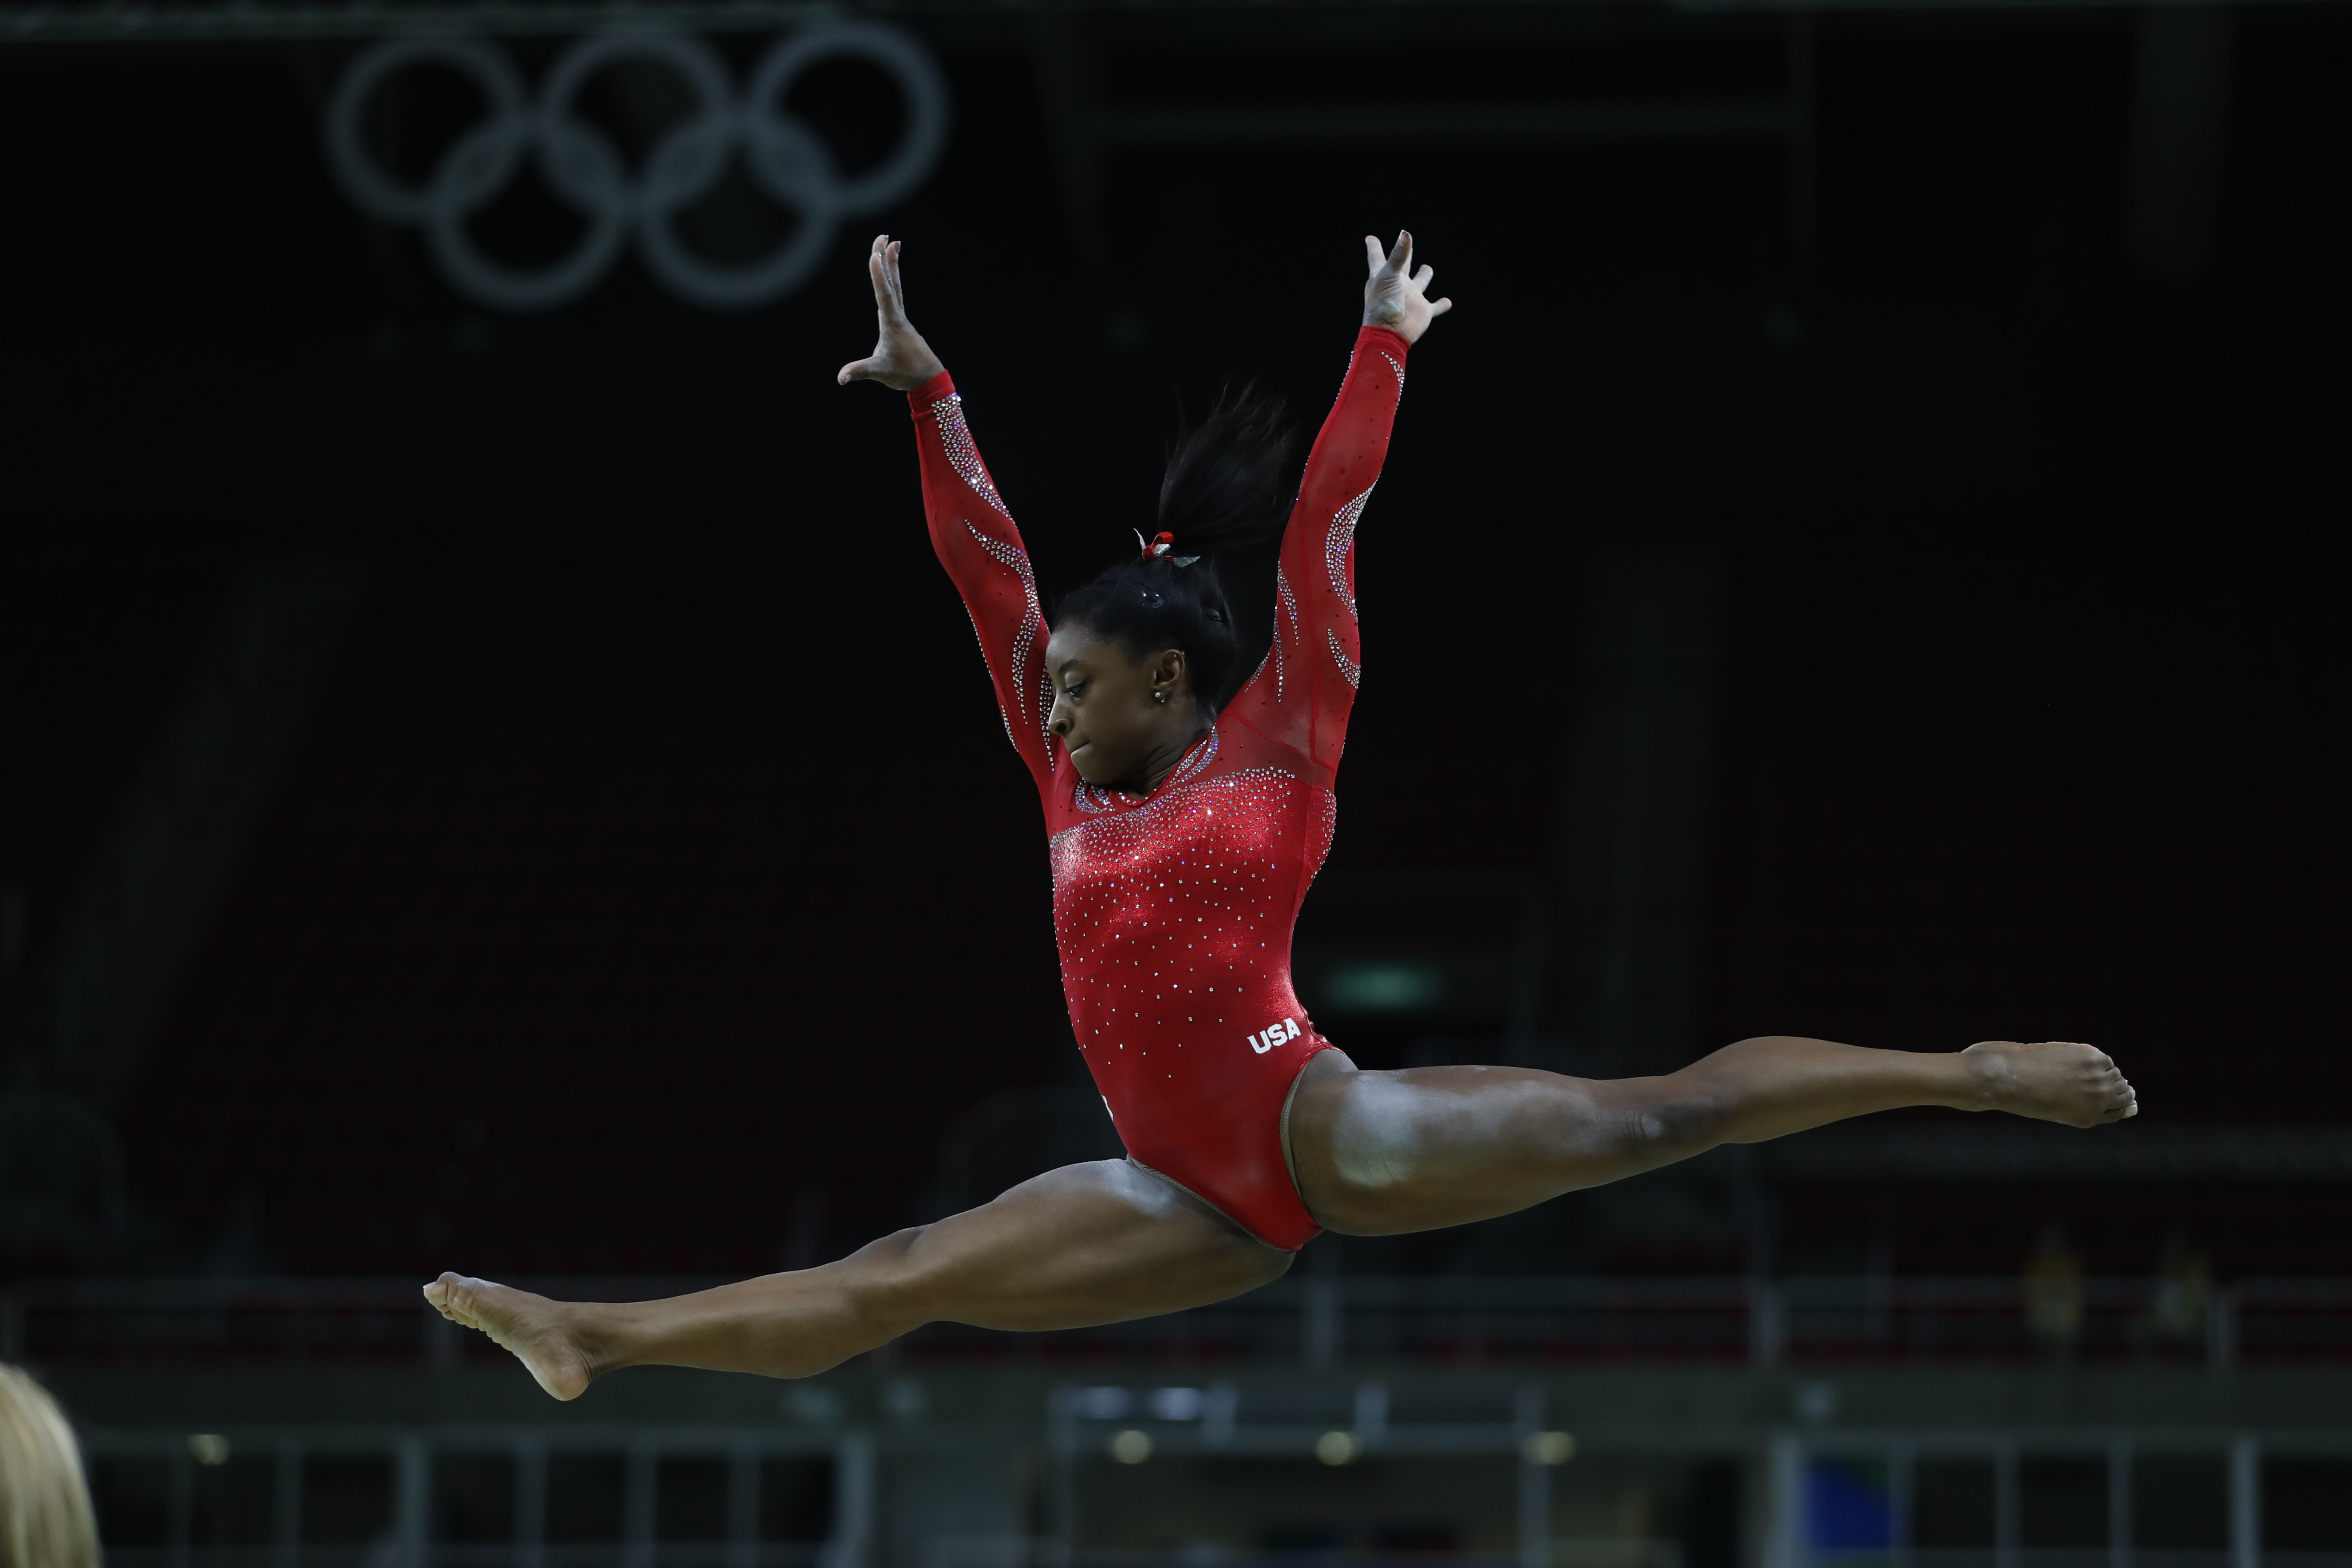 Gymnastique : Simone Biles ouvre la chasse aux records